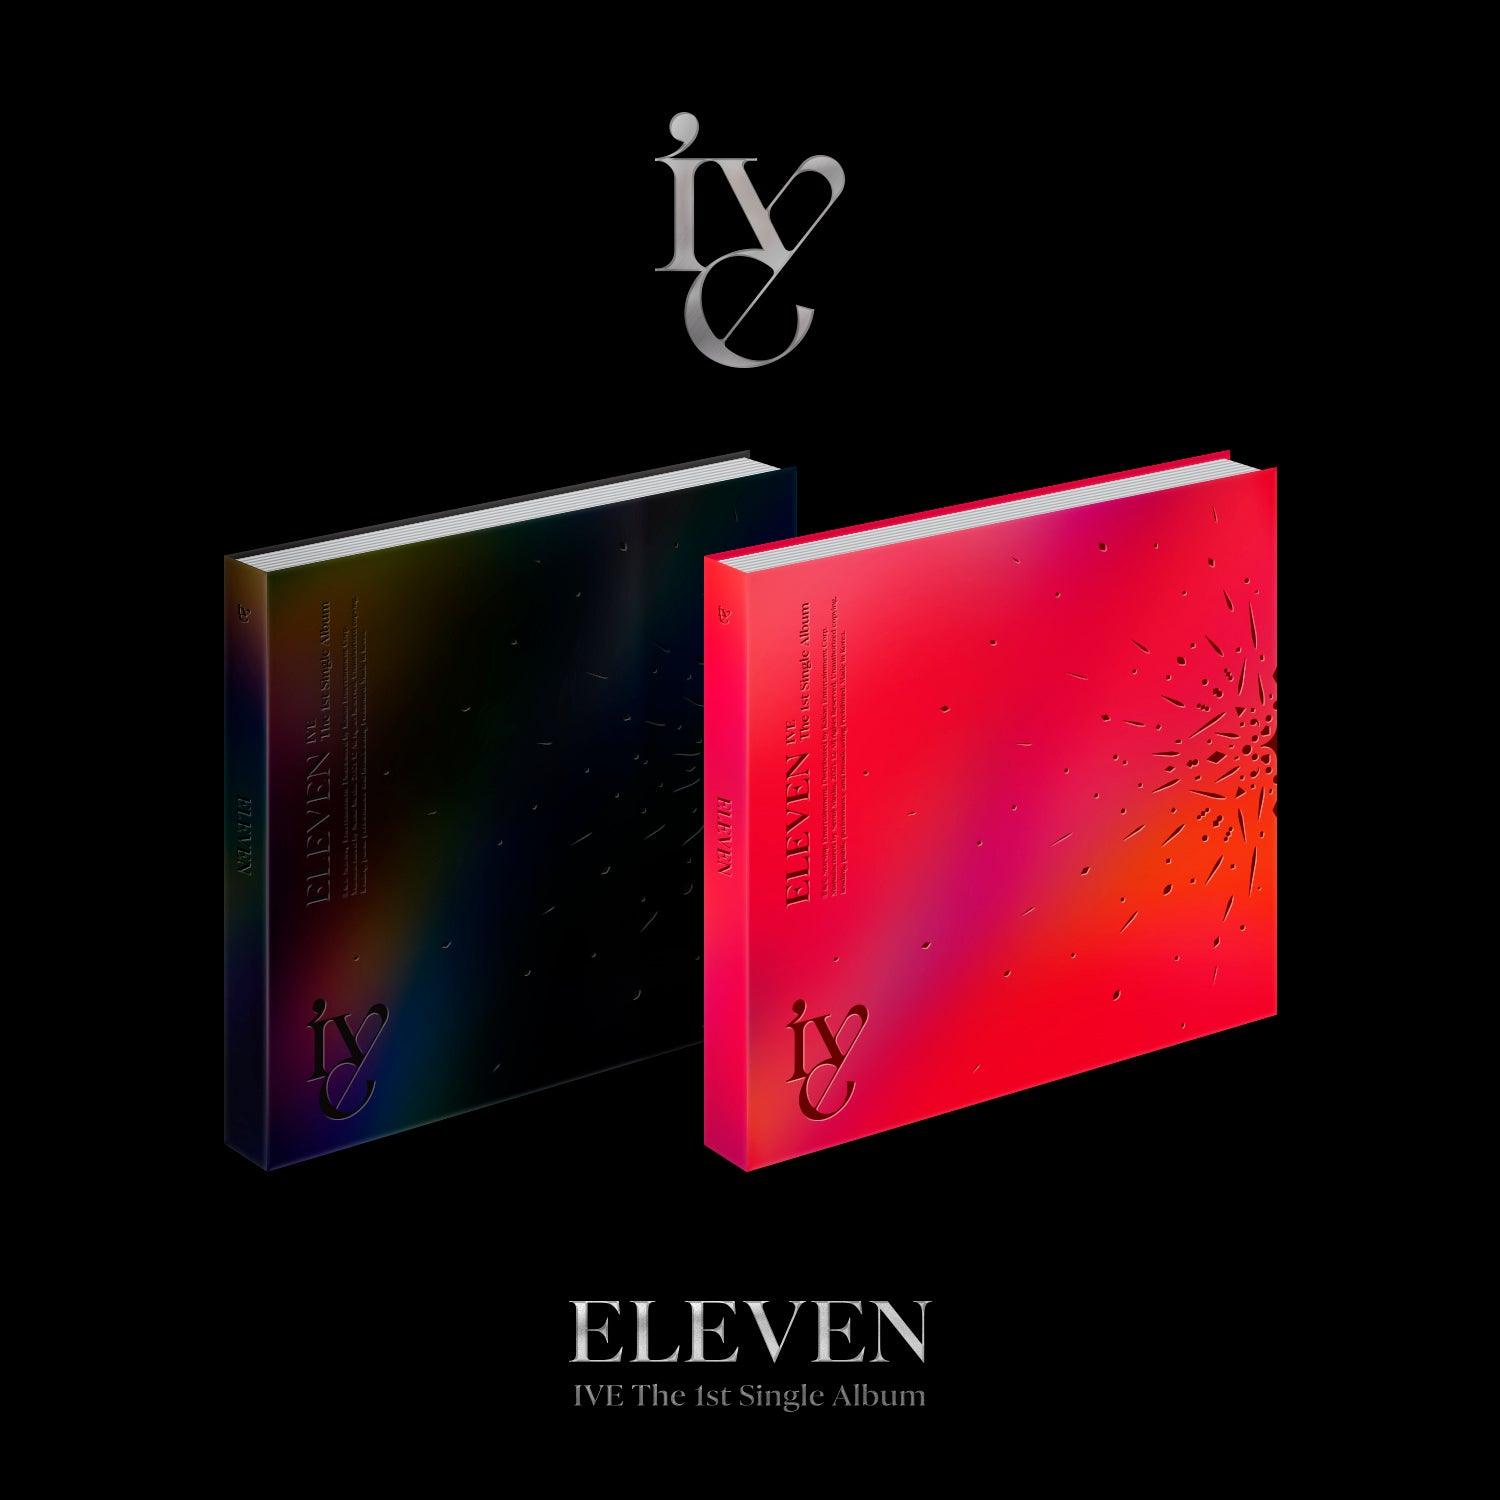 IVE 1ST SINGLE ALBUM 'ELEVEN' + POSTER - KPOP REPUBLIC